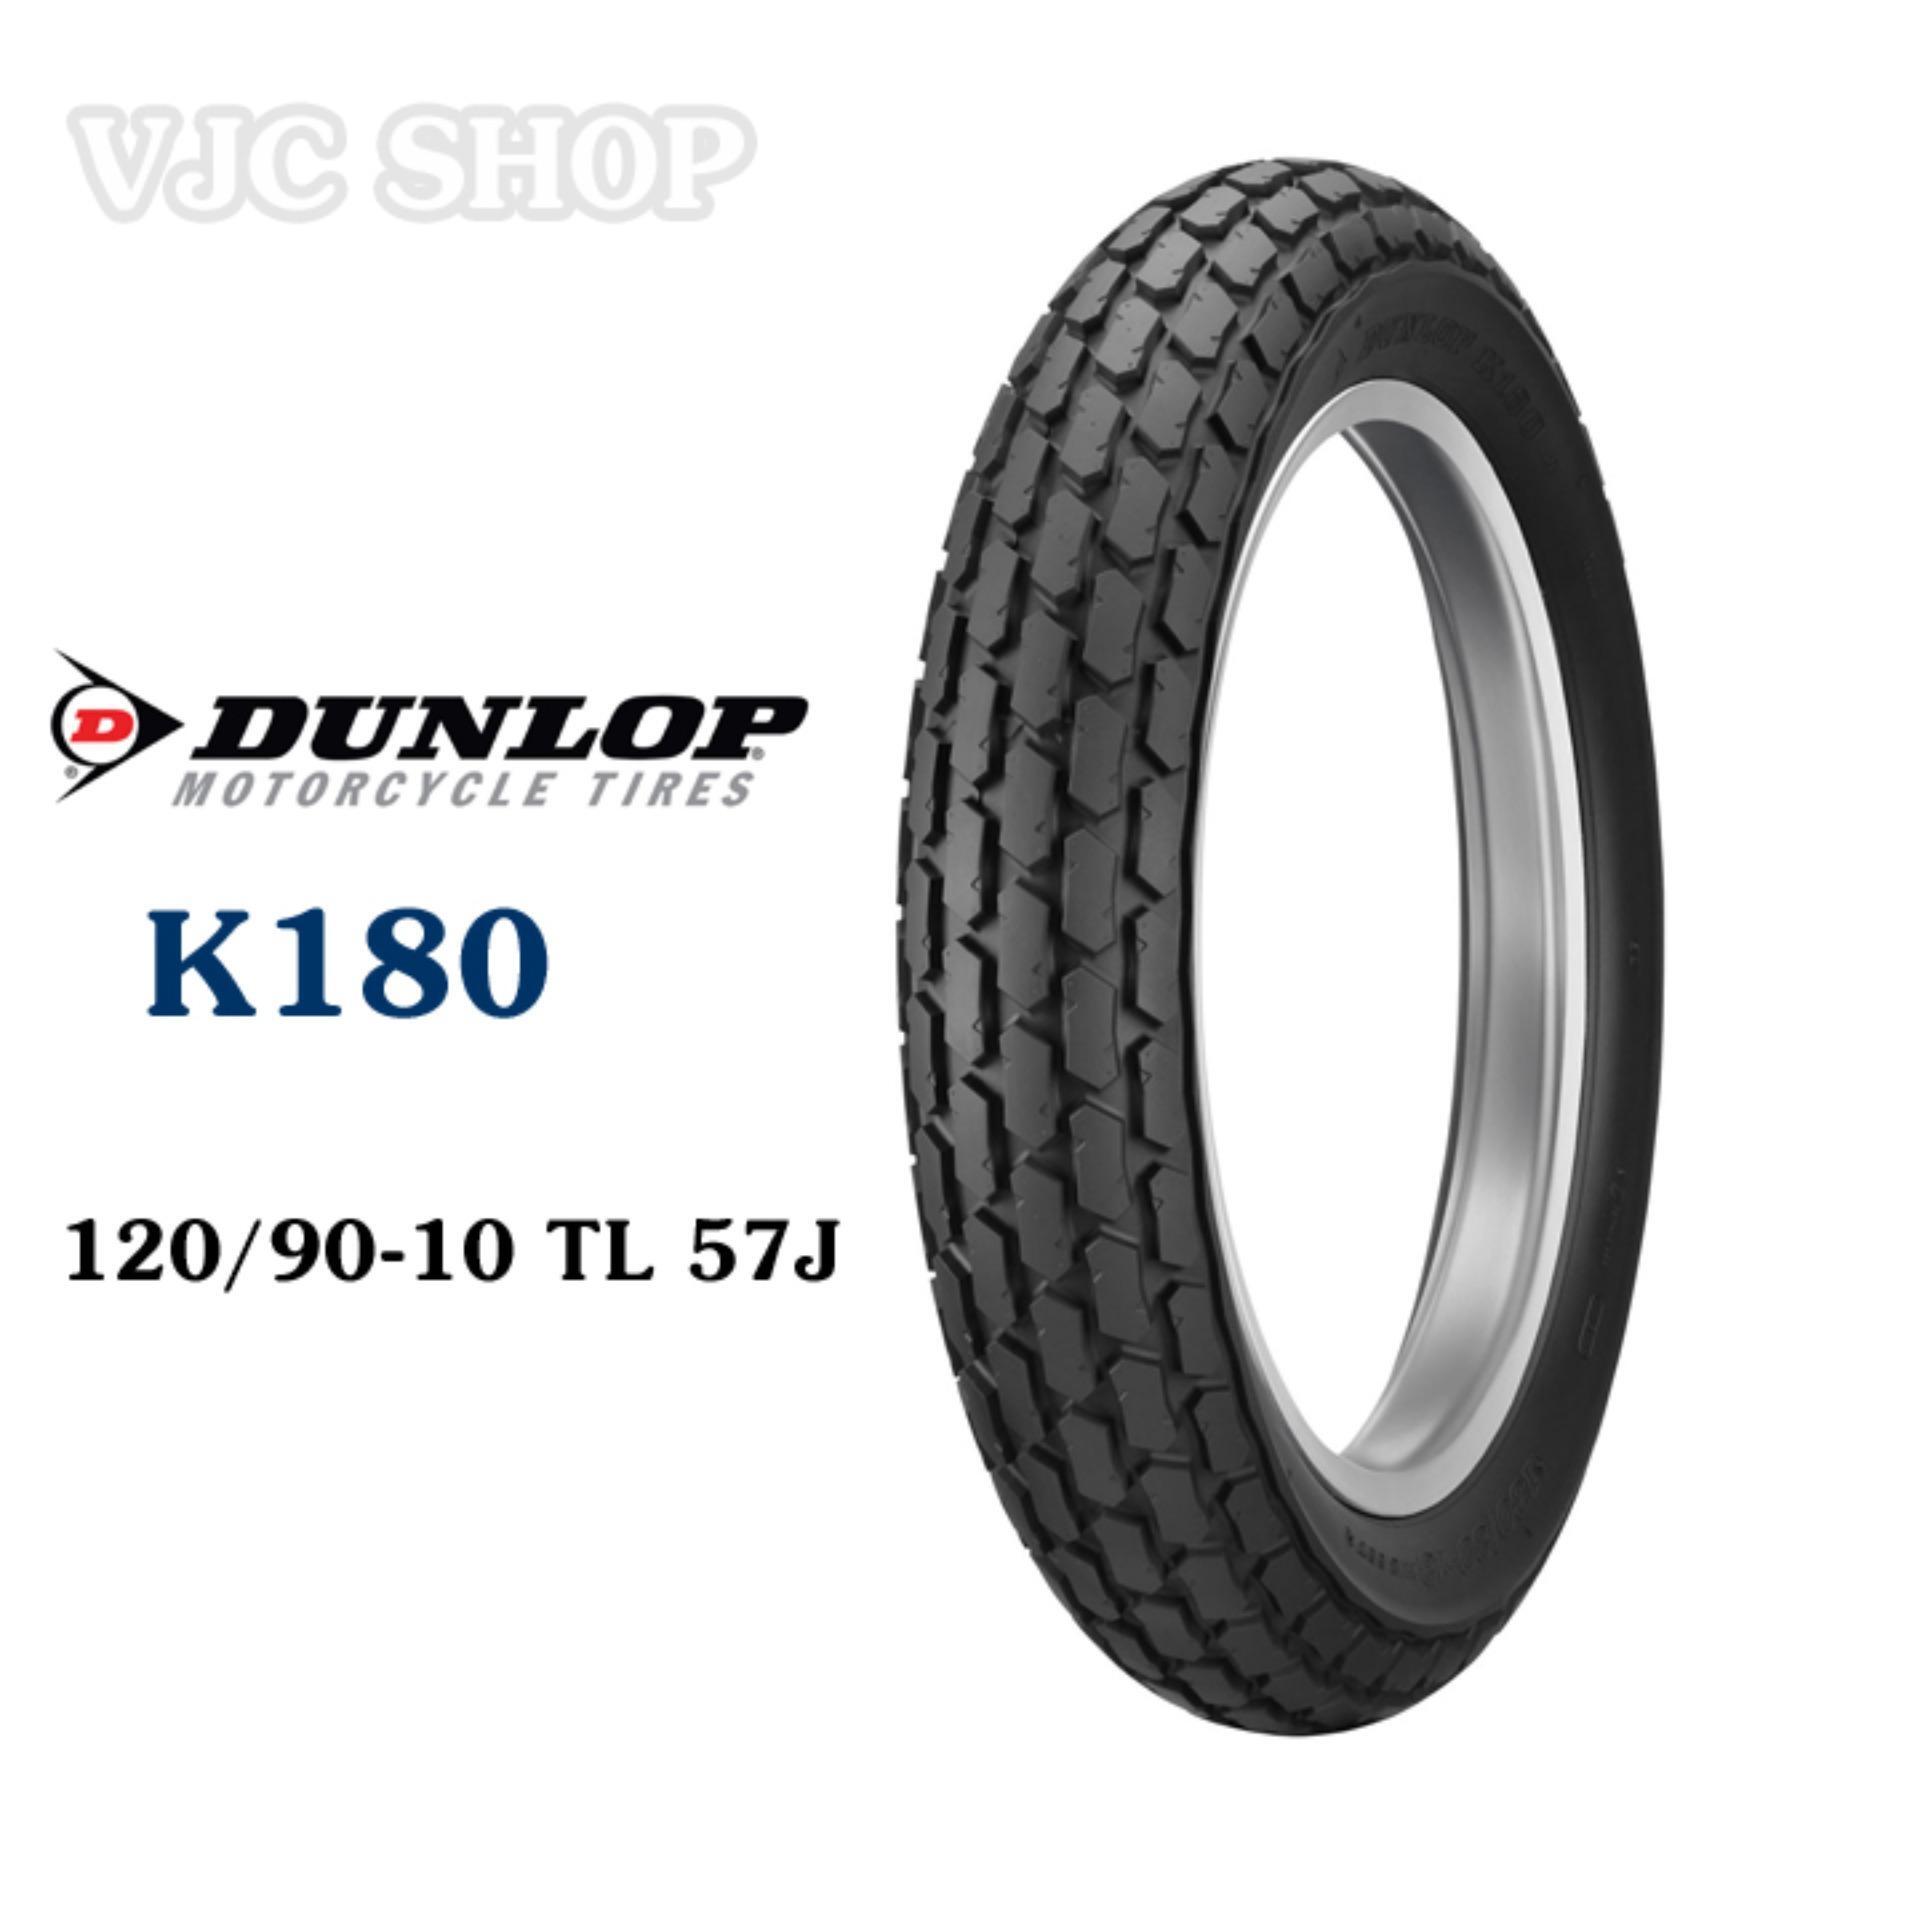 Lốp Dunlop 120/90-10 K180 cho zoomer 50cc